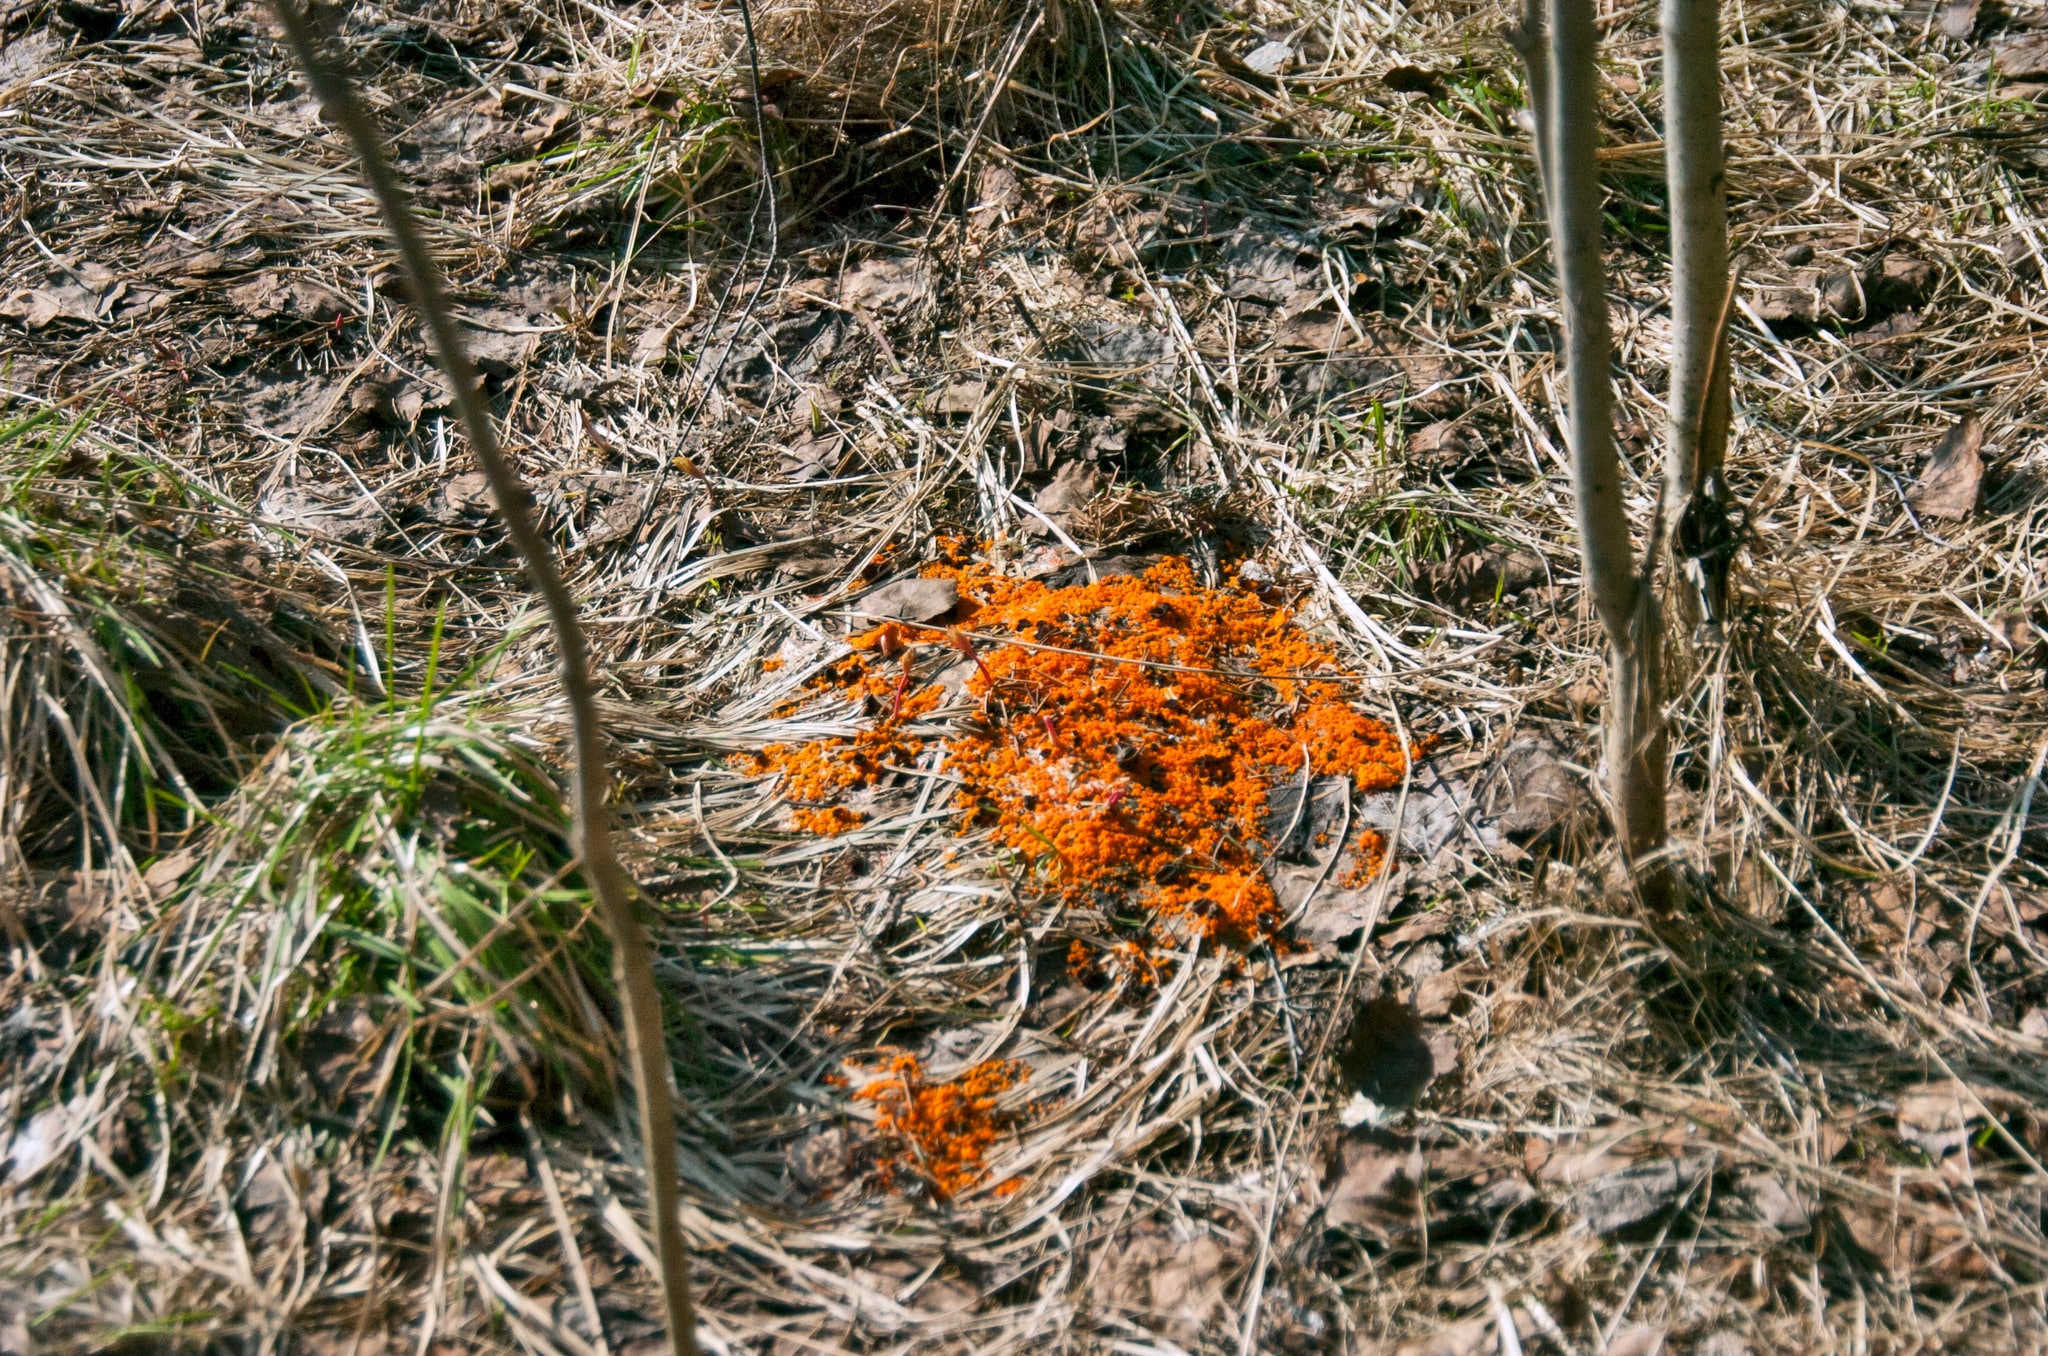 Det är så här man ser den, som en starkt orangefärgad fläck på marken efter snösmältningen. Foto: Bernt Karlsson